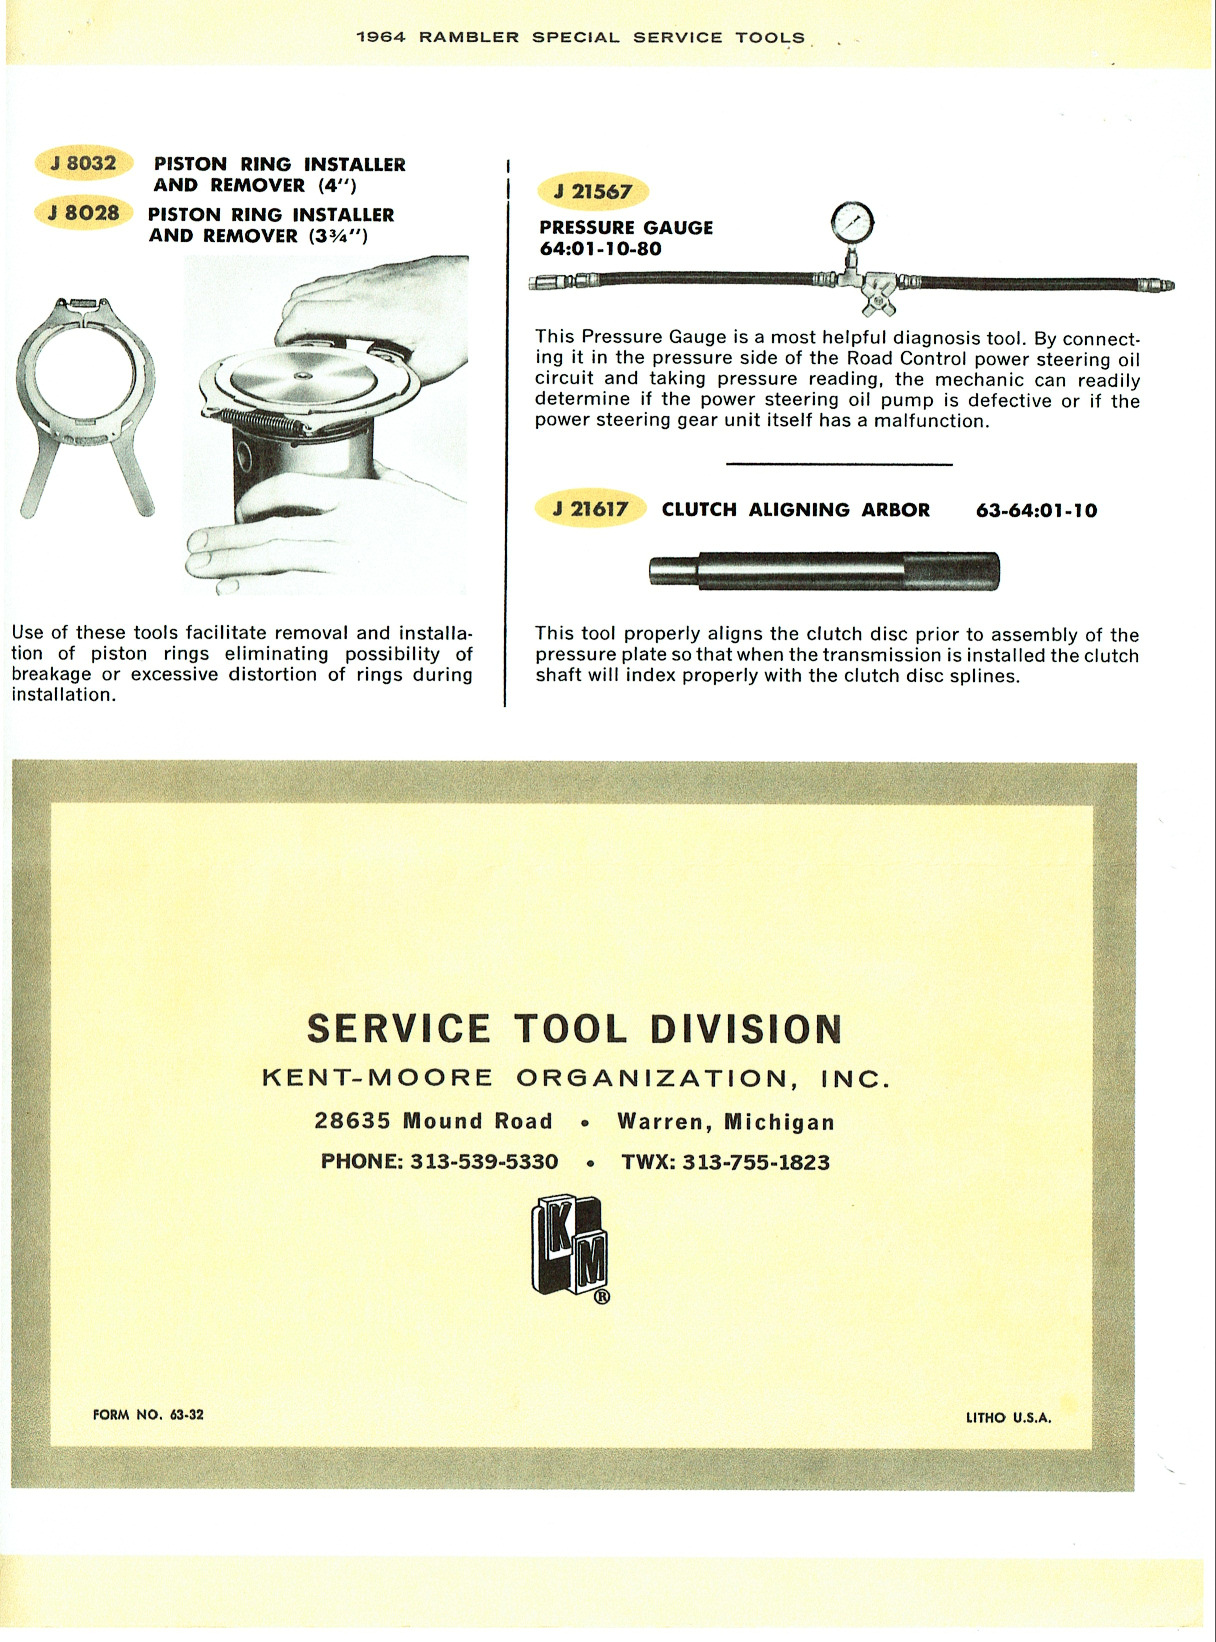 1964_Rambler_Special_Tools-06